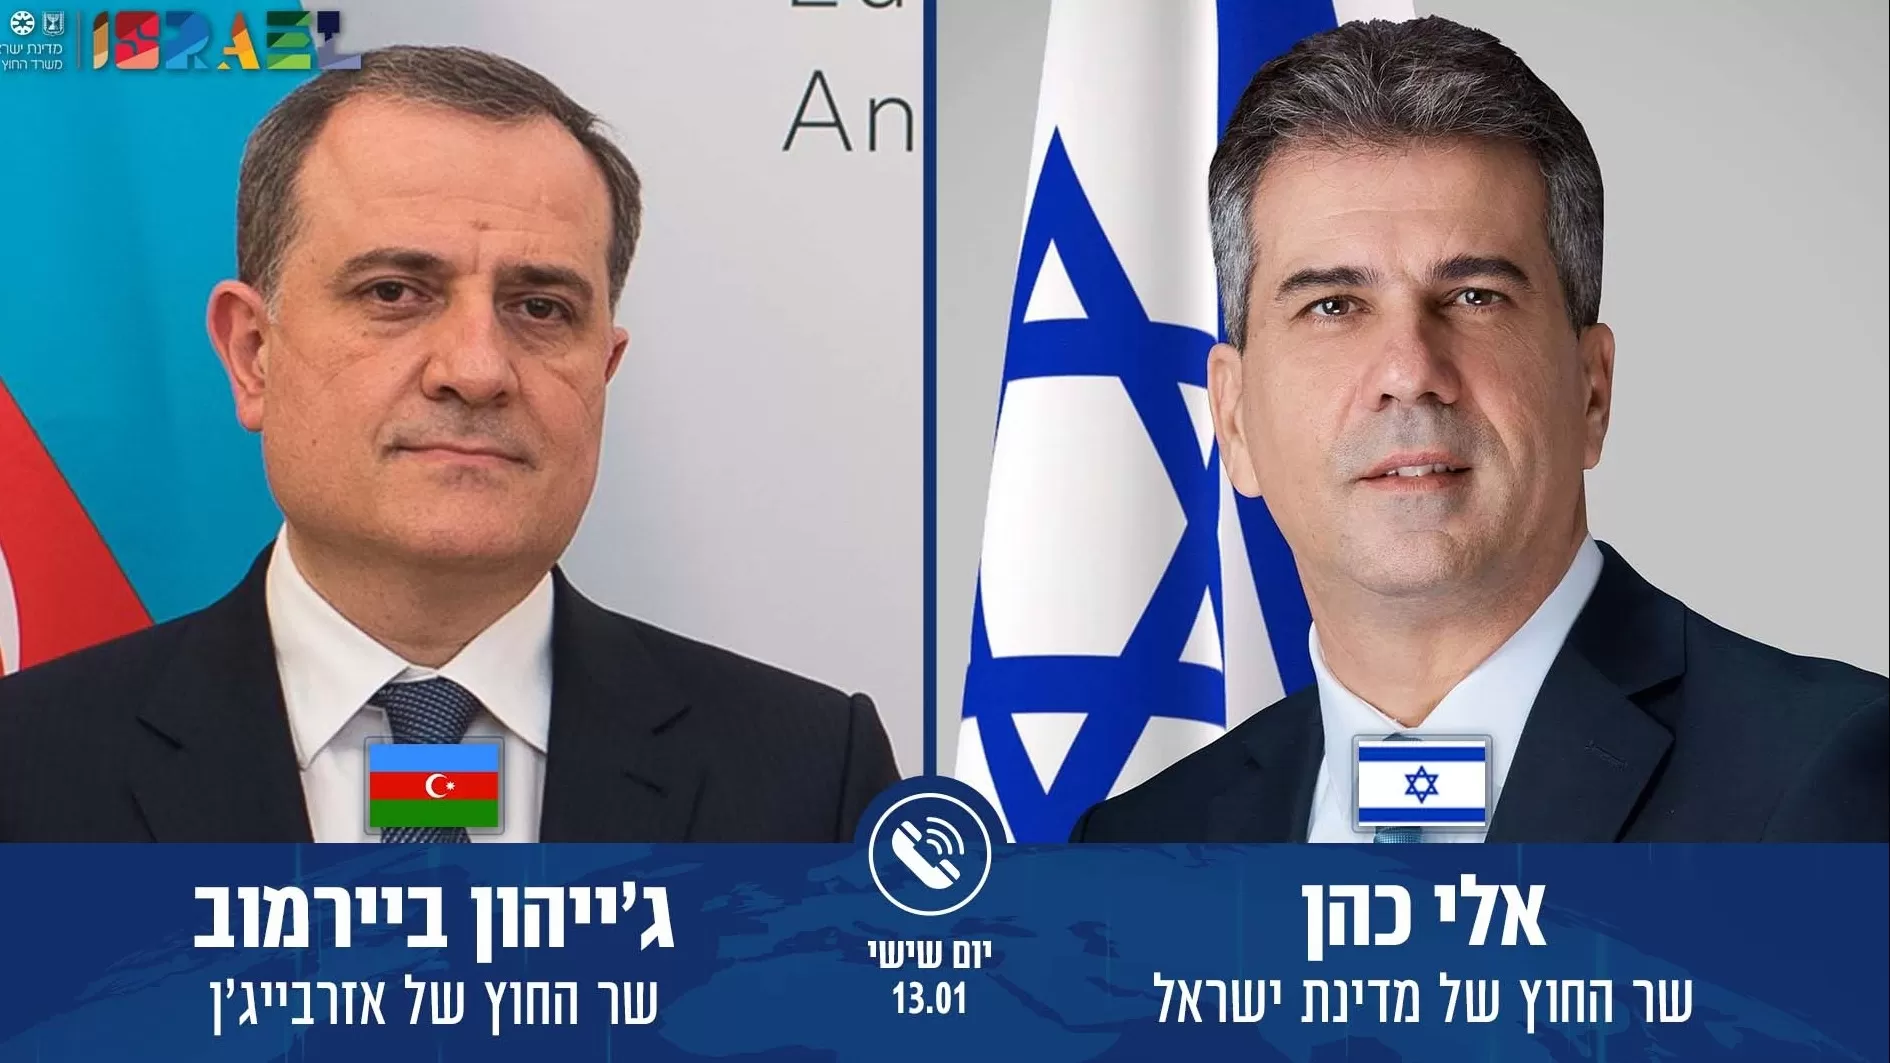 Իսրայելն ու Ադրբեջանը ընդլայնում են համագործակցությունը. Բայրամովը հրավիրվել է Իսրայել